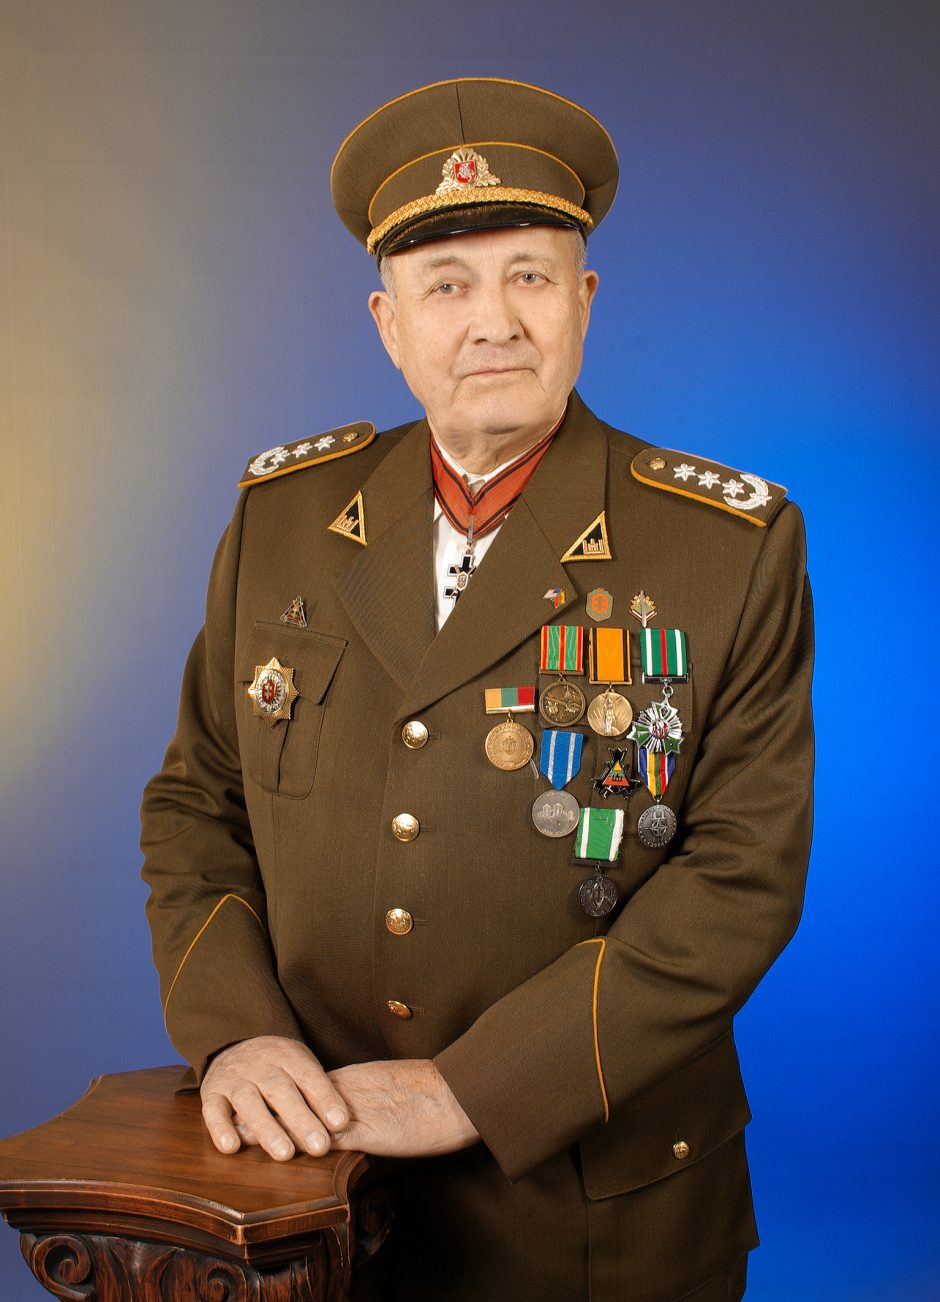 Mirė partizanas J. Čeponis-Vaidevutis